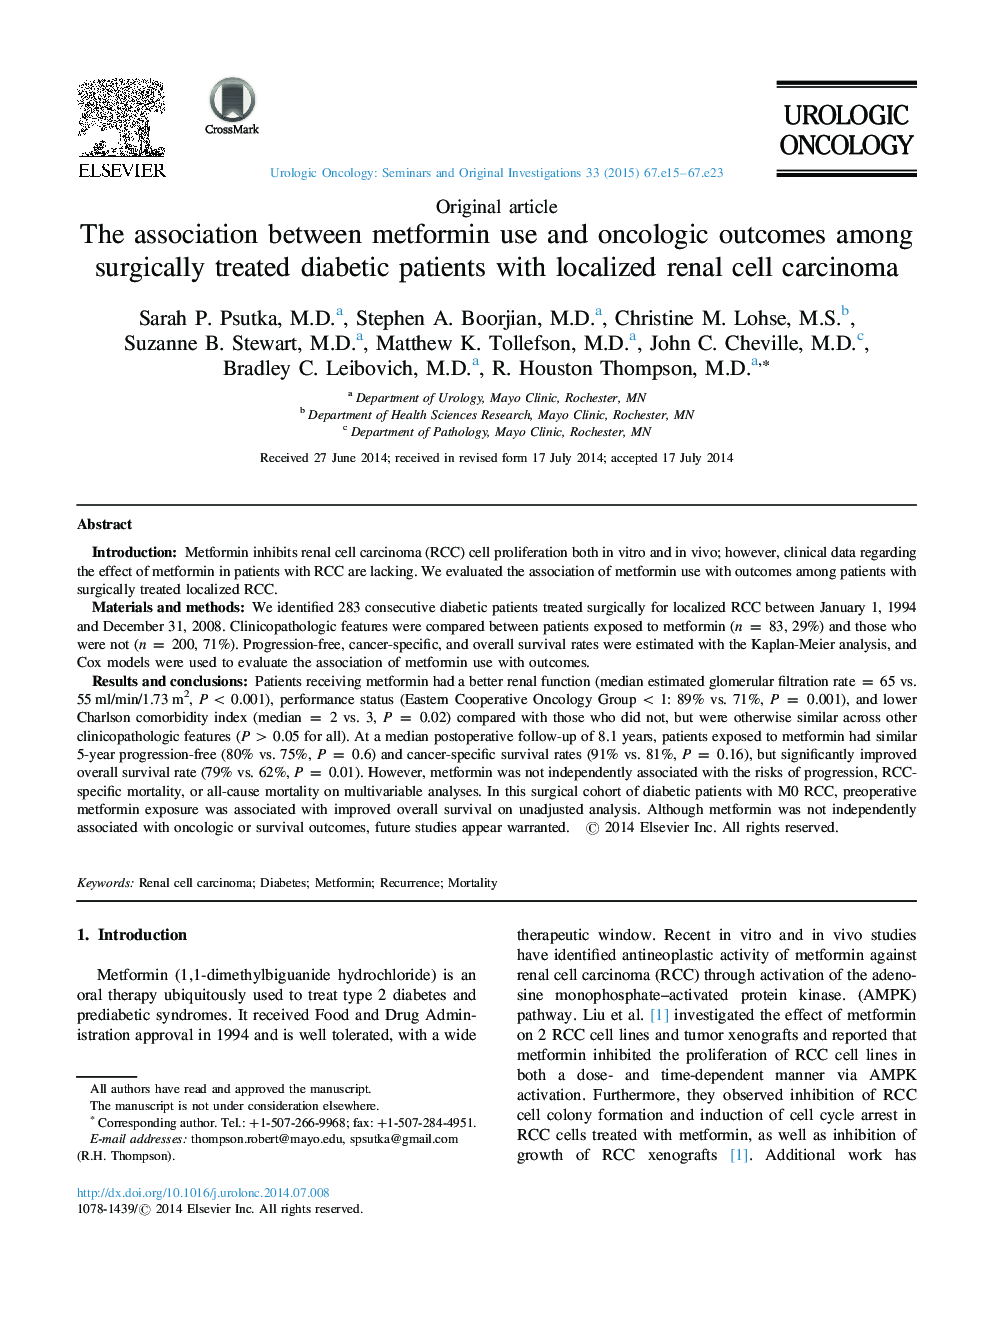 ارتباط بین استفاده از متفورمین و نتایج انکولوژیک در بیماران دیابتی تحت درمان جراحی با کارسینوم سلول های موضعی 12 